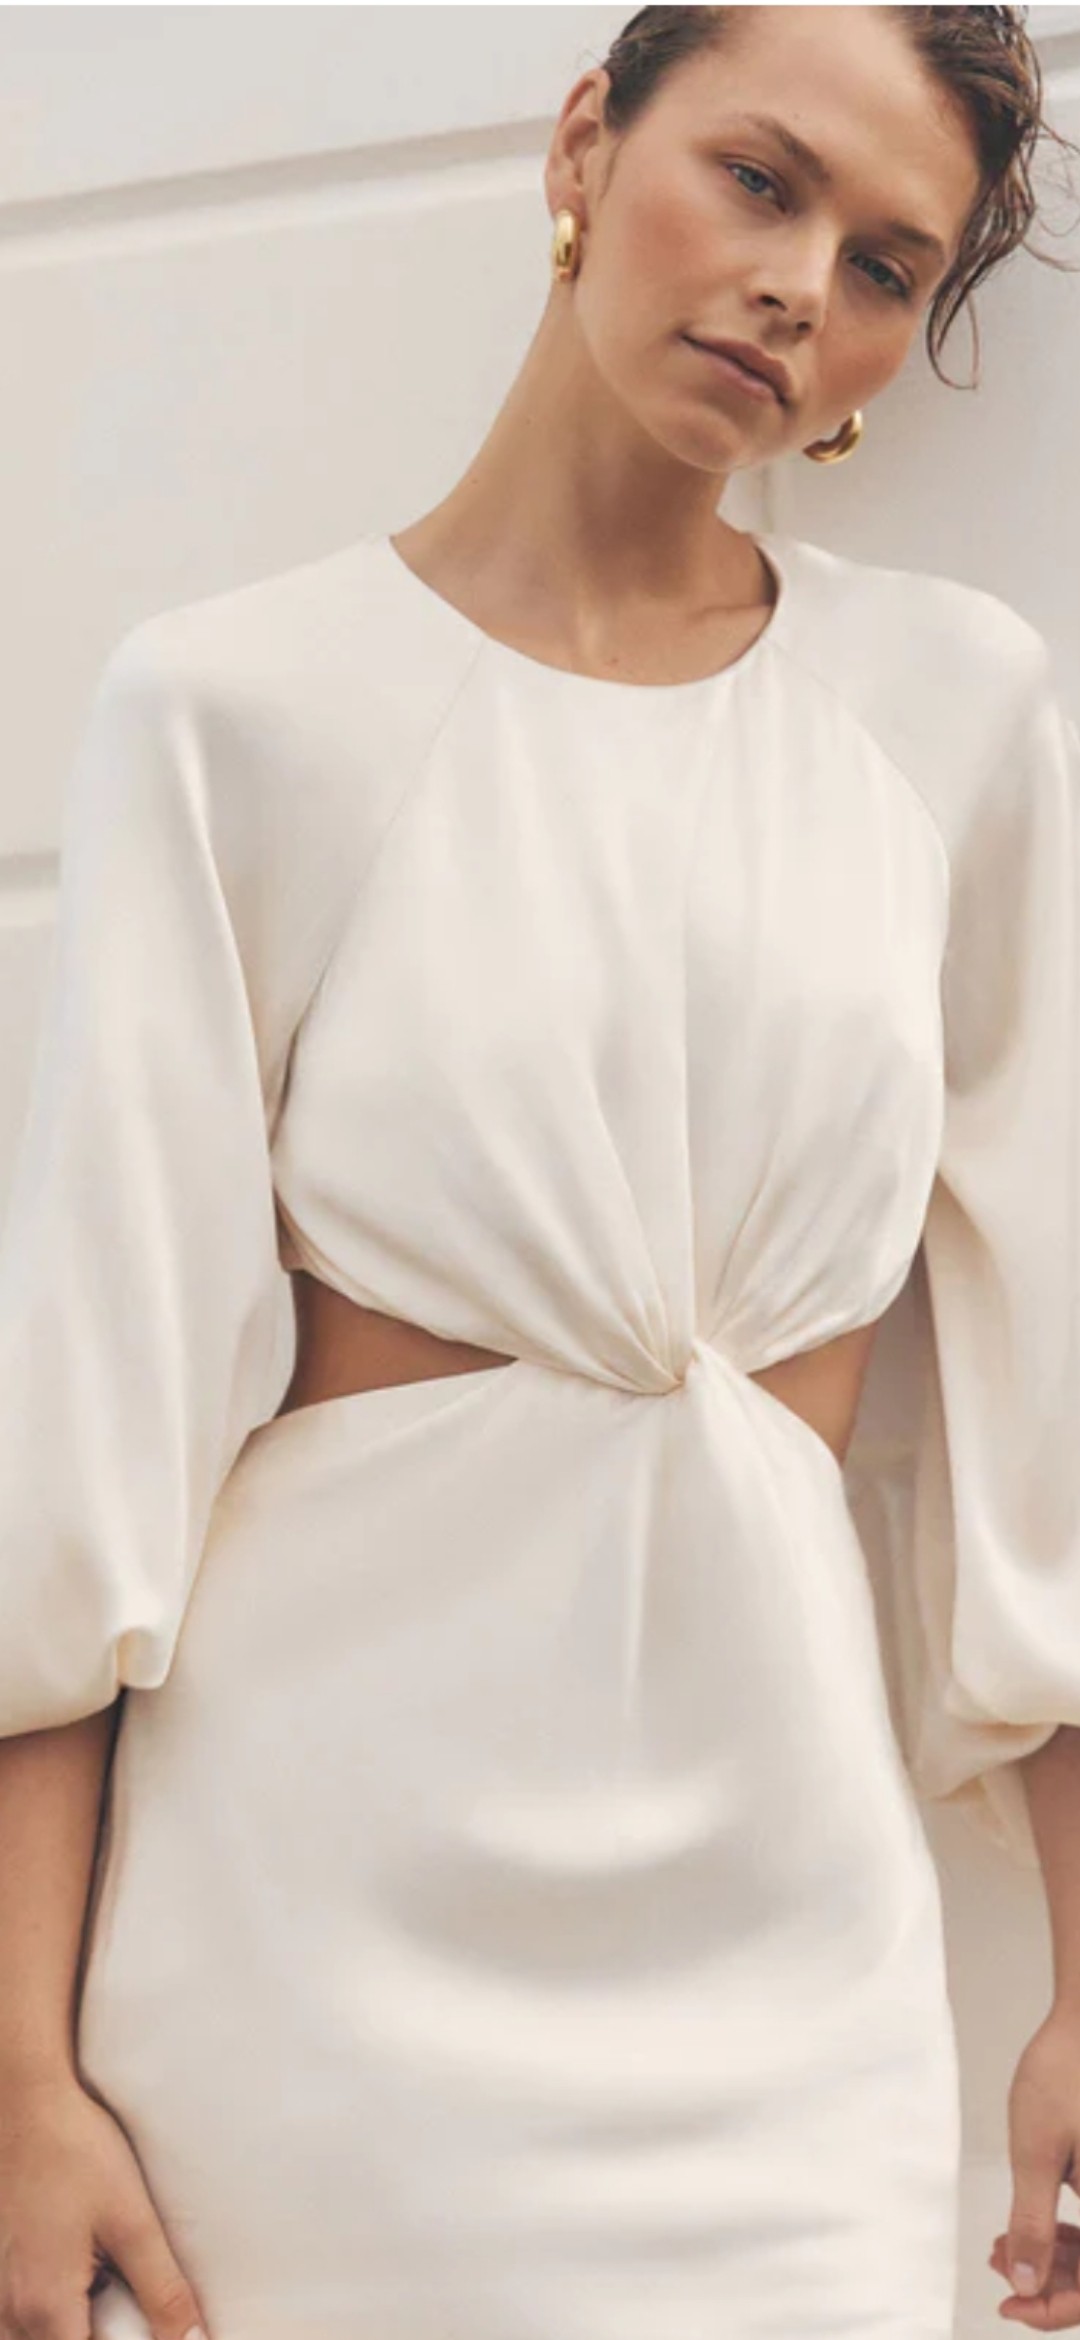 Shona Joy New Wedding Dress Save 29% - Stillwhite